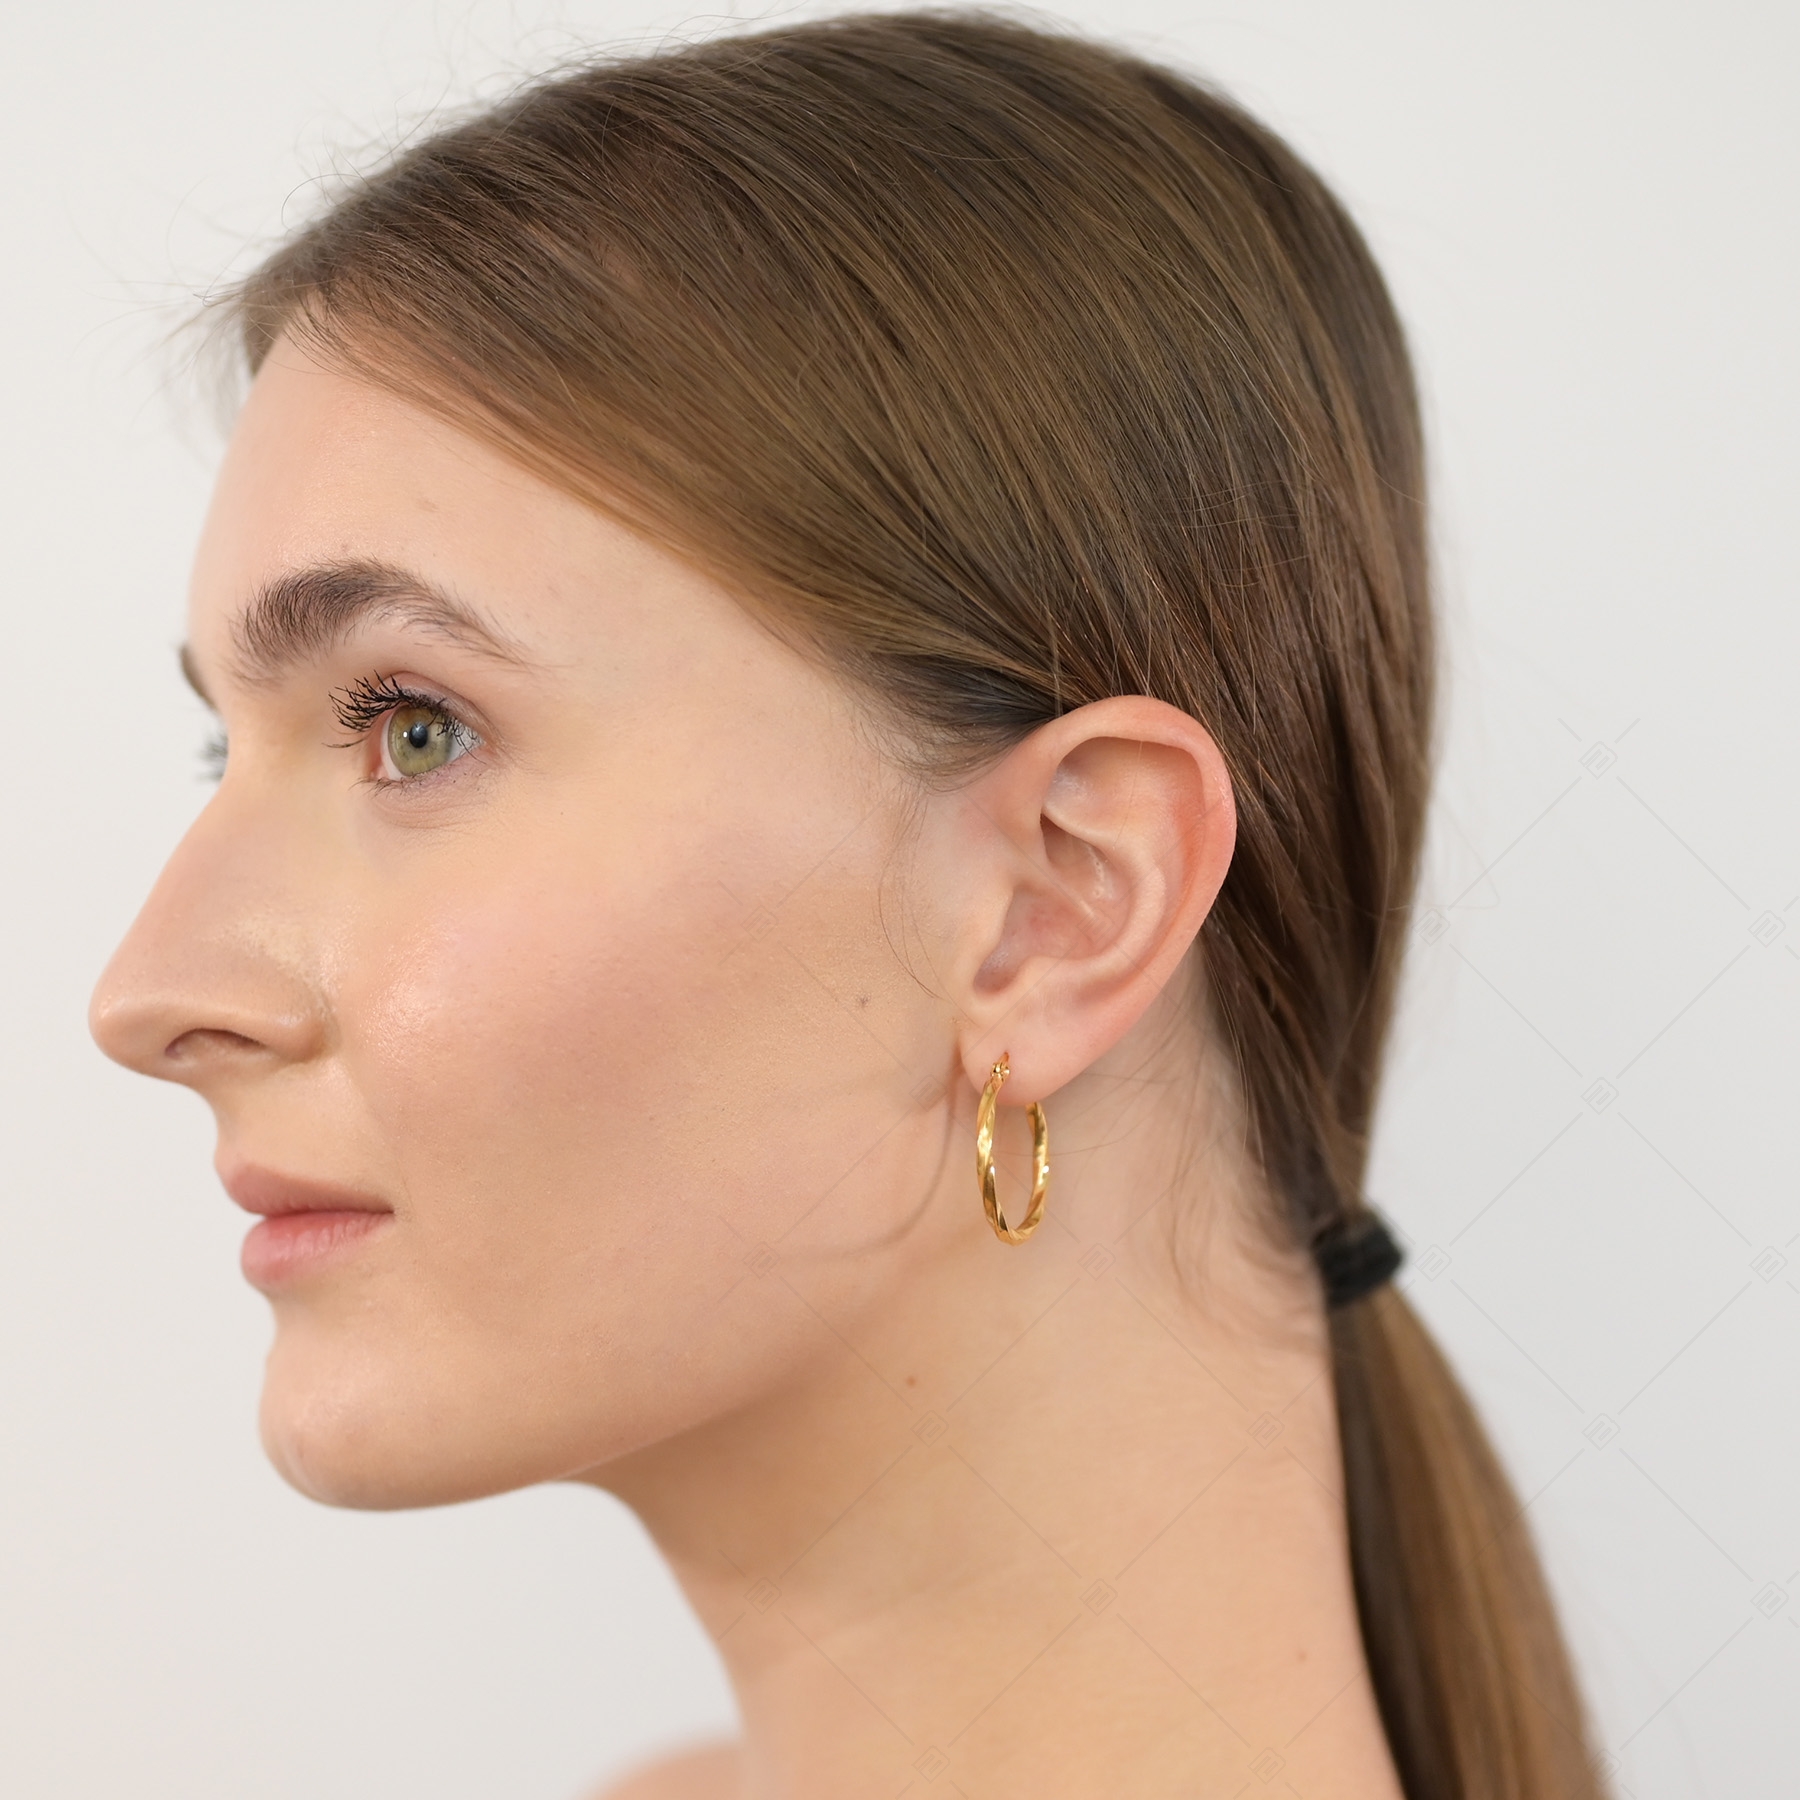 BALCANO - Marie / Boucles d'oreilles créoles en acier inoxydable plaqué or 18K (141268BC88)